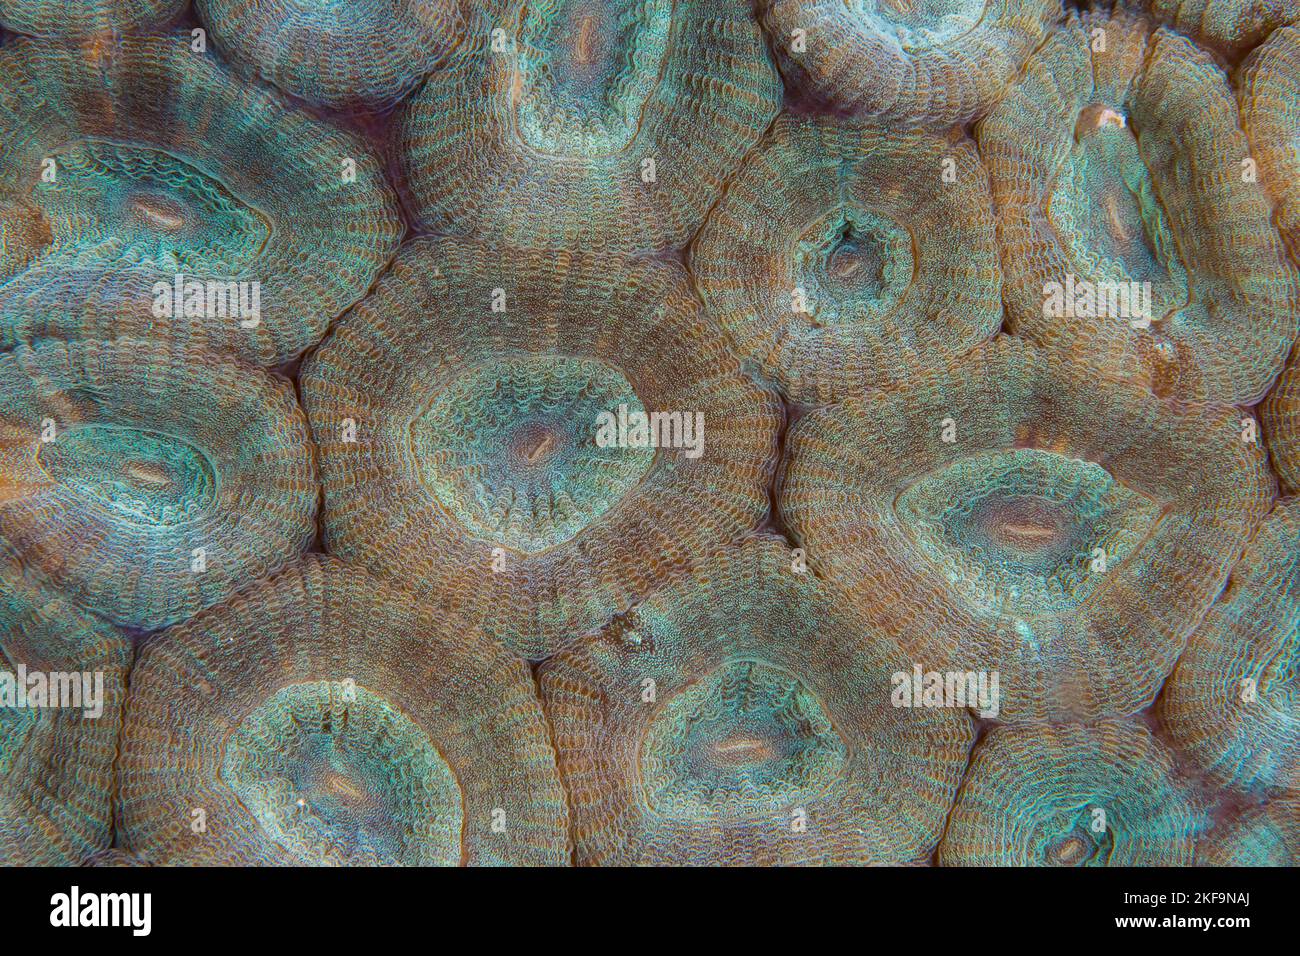 Nahaufnahme einer detaillierten, farbenfrohen Ansicht gesunder Korallenpolypen Stockfoto